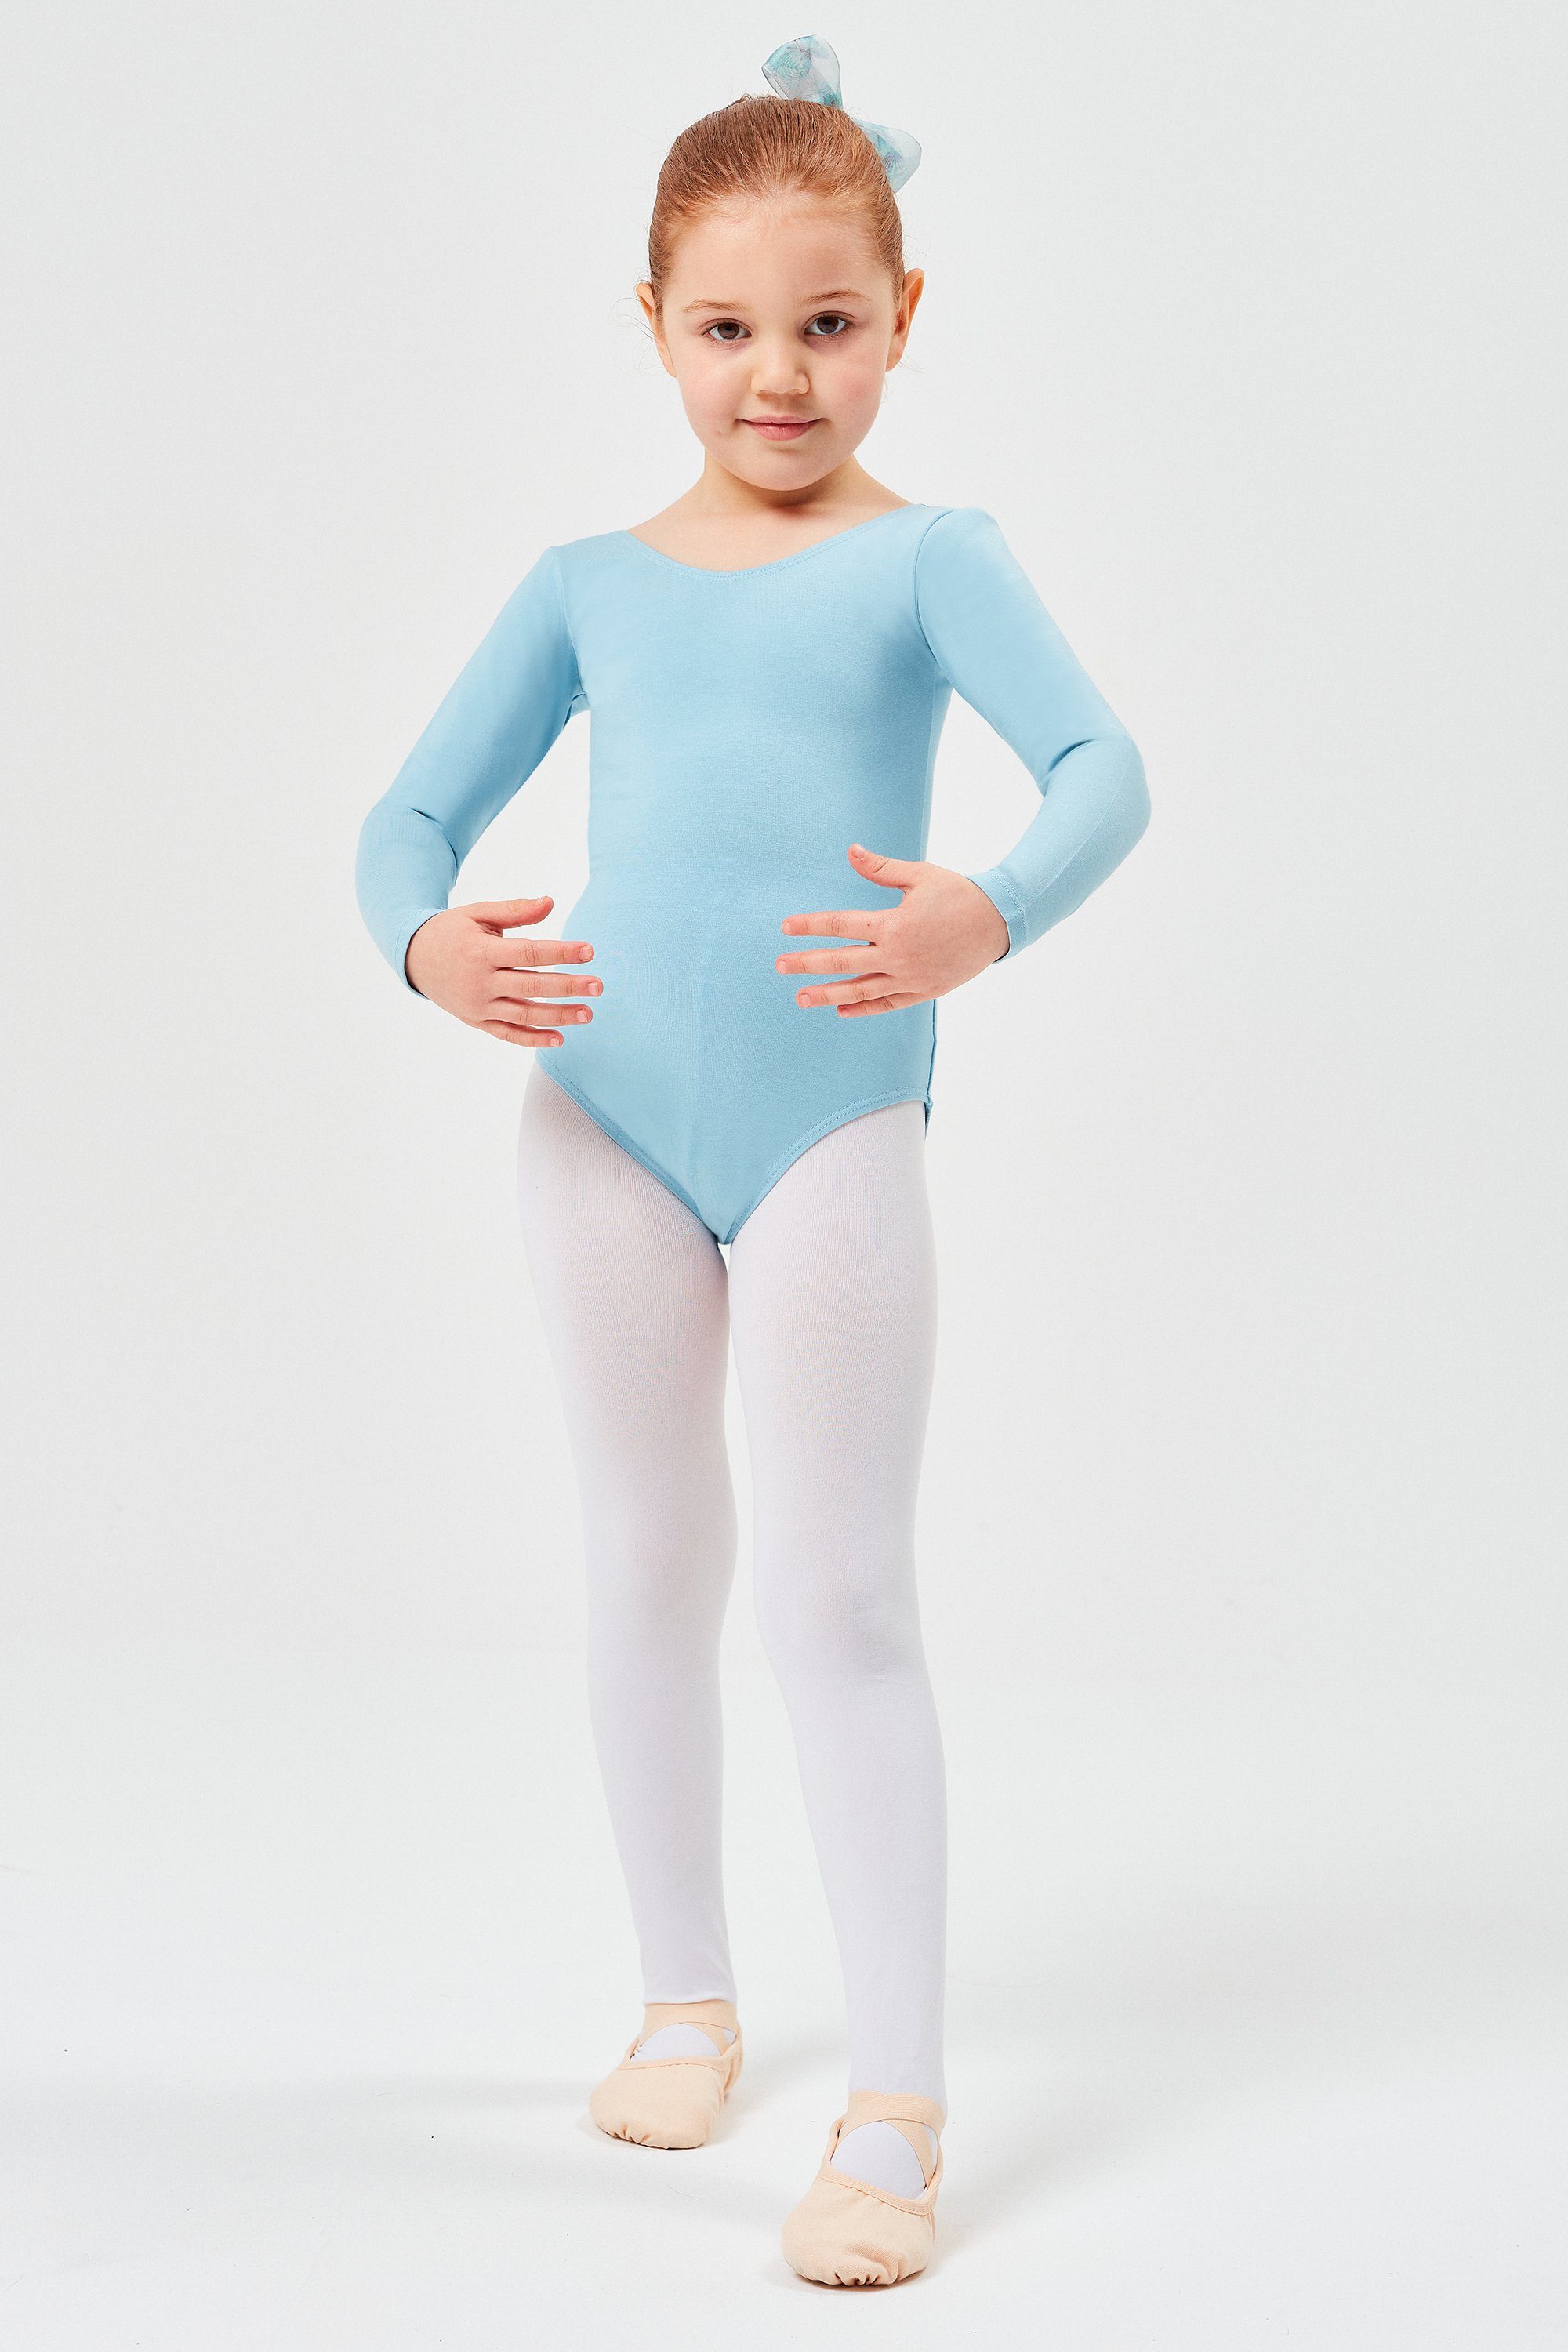 Ballett Langarm Body weichem aus Kinder Baumwollmischgewebe hellblau tanzmuster Trikot fürs Ballettbody Lilly